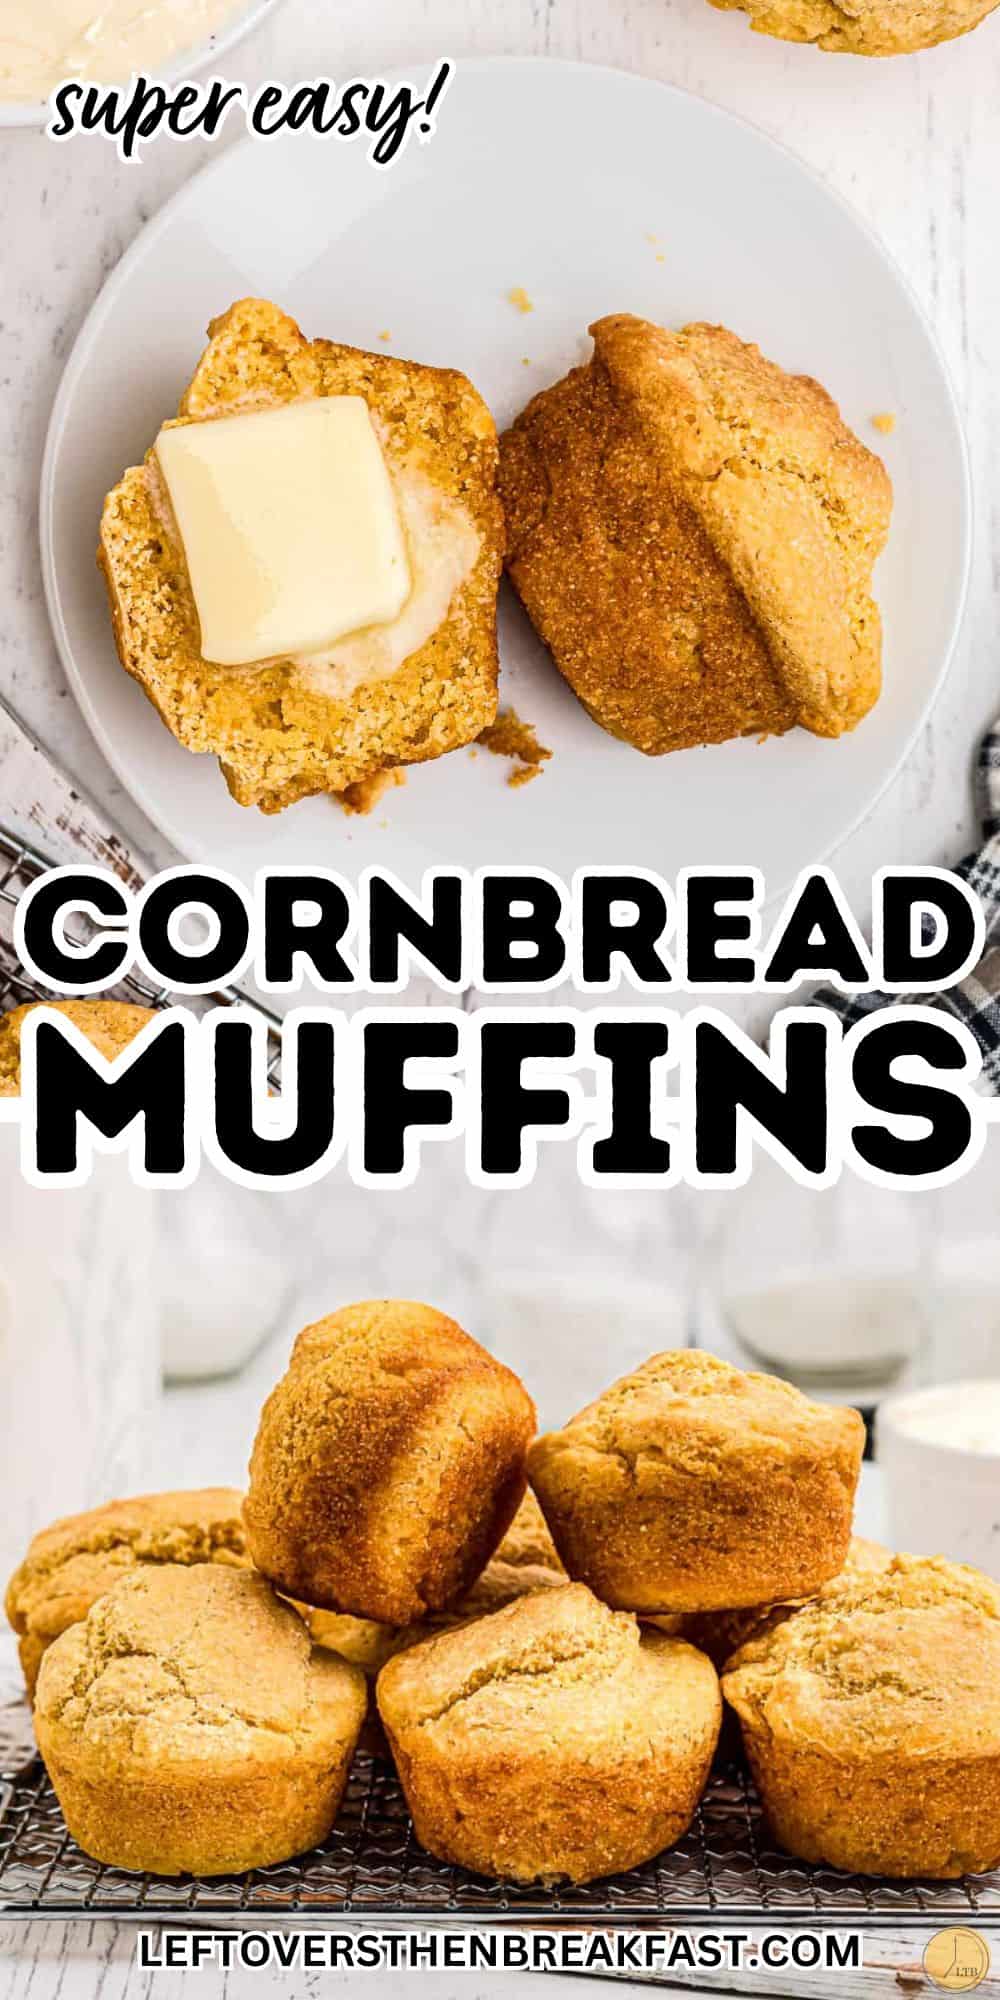 cornbread made into muffins